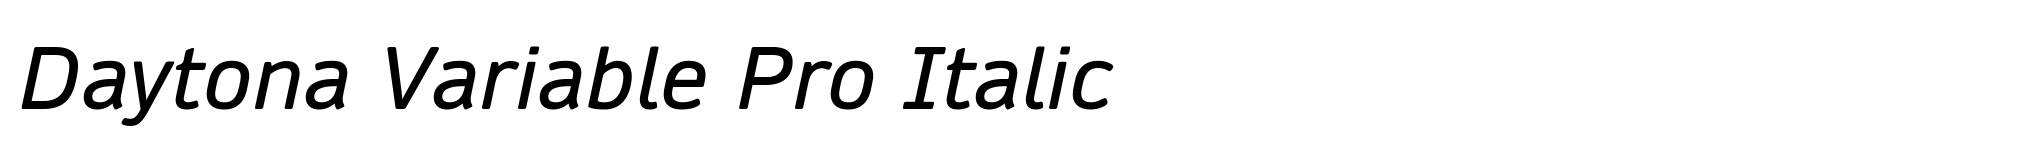 Daytona Variable Pro Italic image